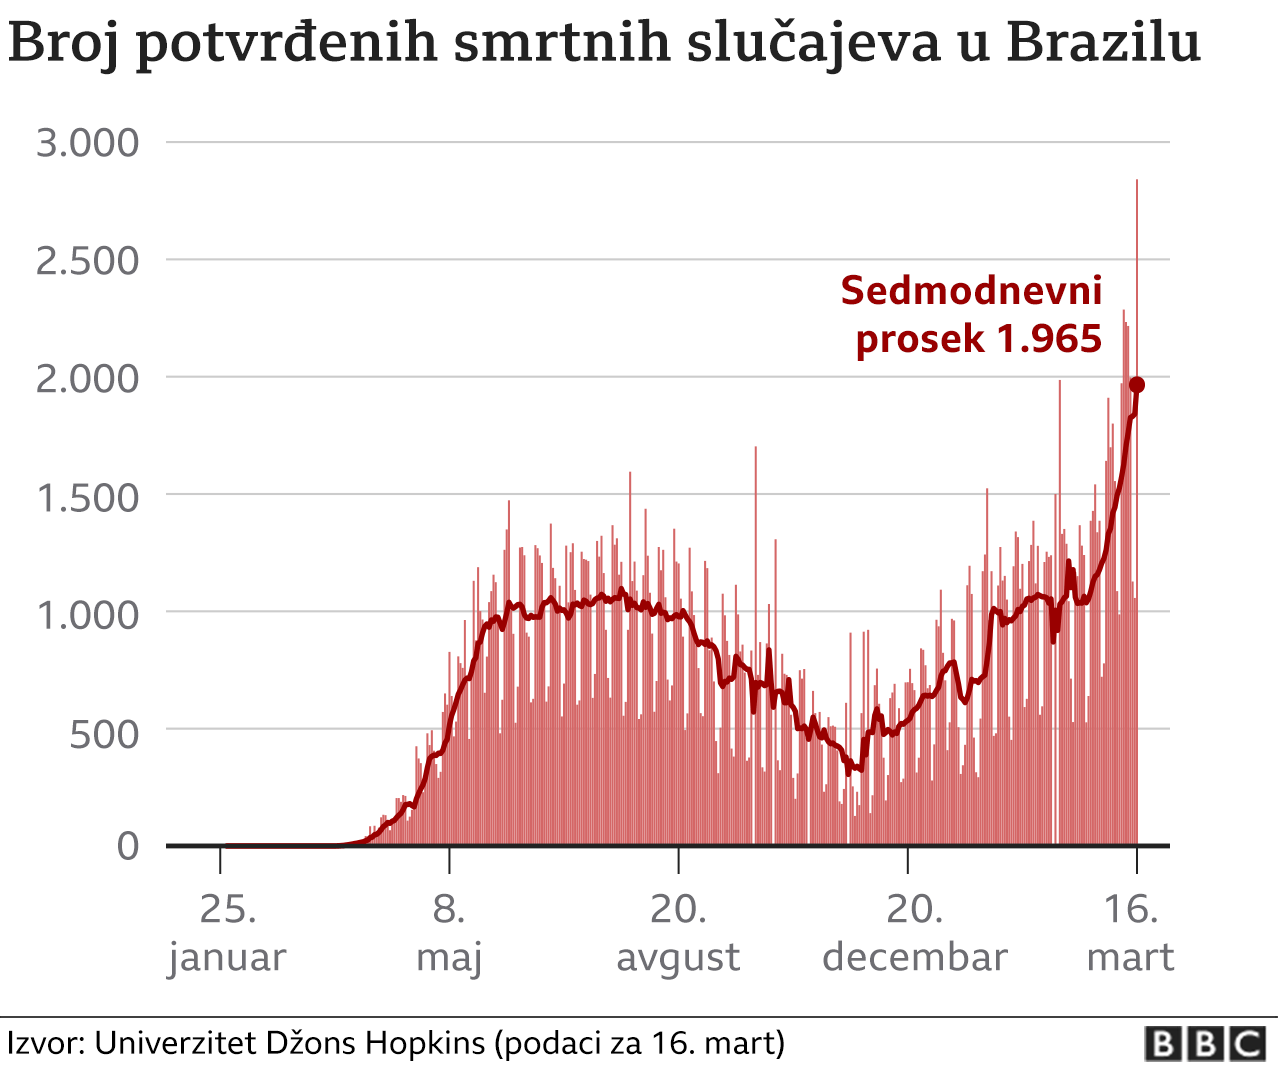 Brazil, korona virus, smrtnost u Brazilu